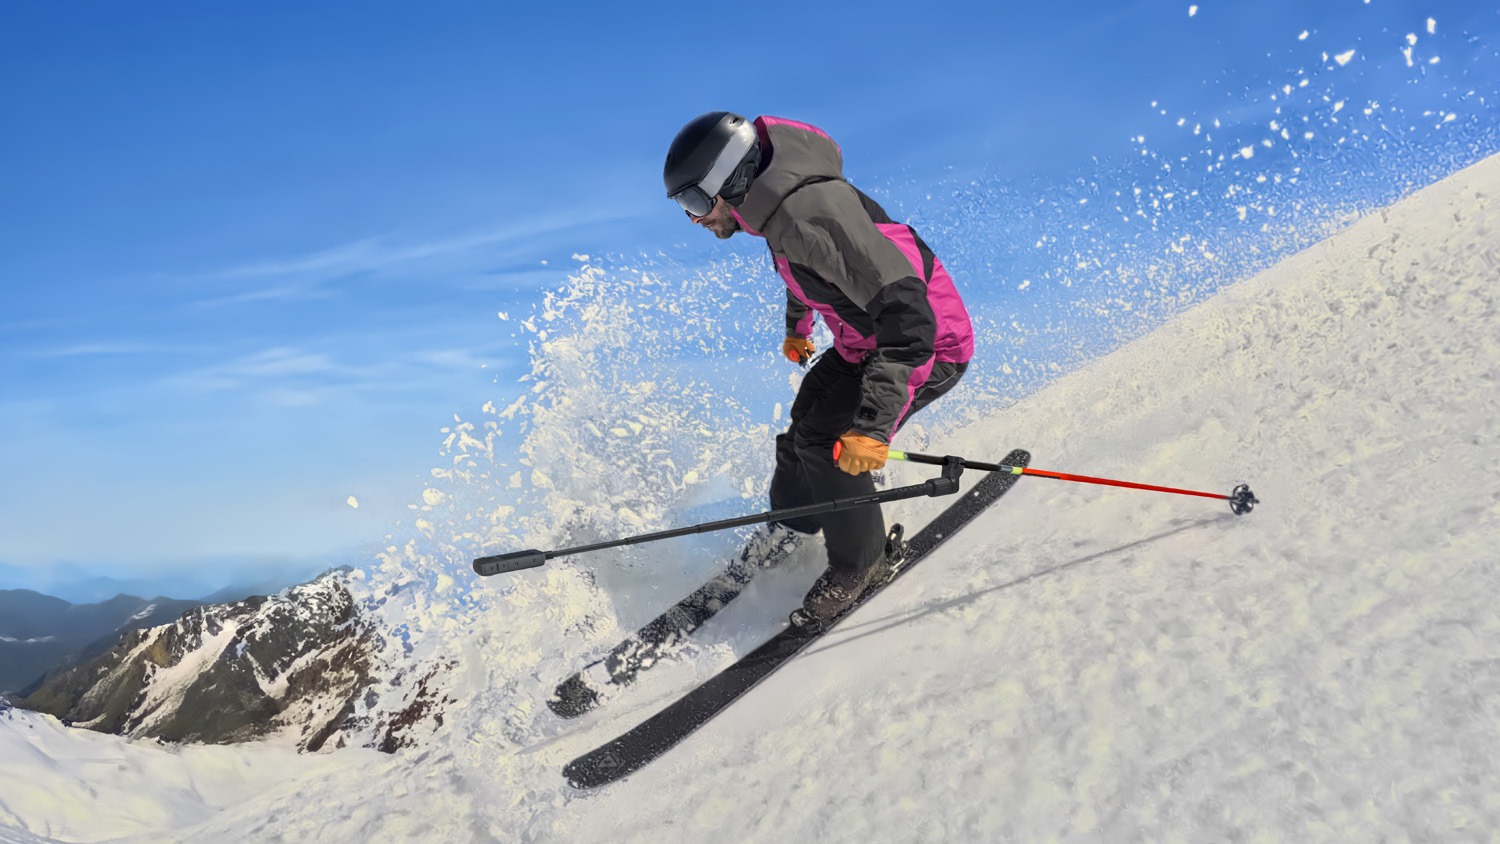 Лыжник спускается по заснеженному склону, одетый в розово-черный лыжный костюм, с камерой на 360 градусов, прикрепленной к палке для селфи, в руке он разбрызгивает снег, когда делает крутой поворот.